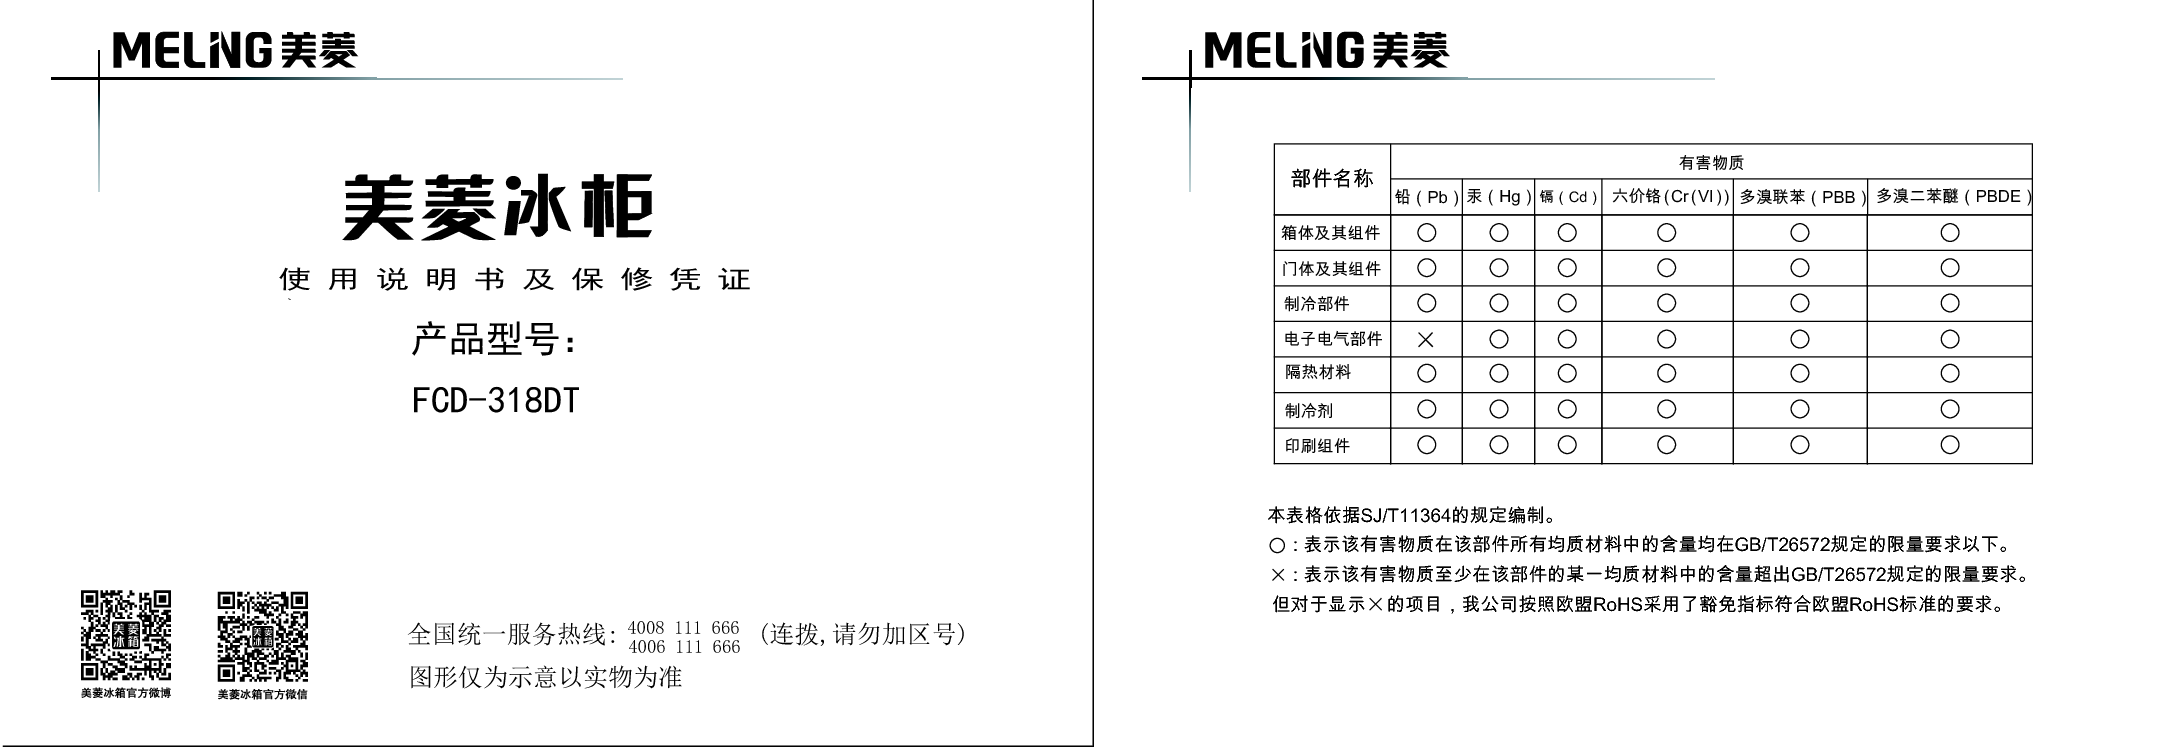 美菱 Meiling FCD-318DT 使用说明书 封面